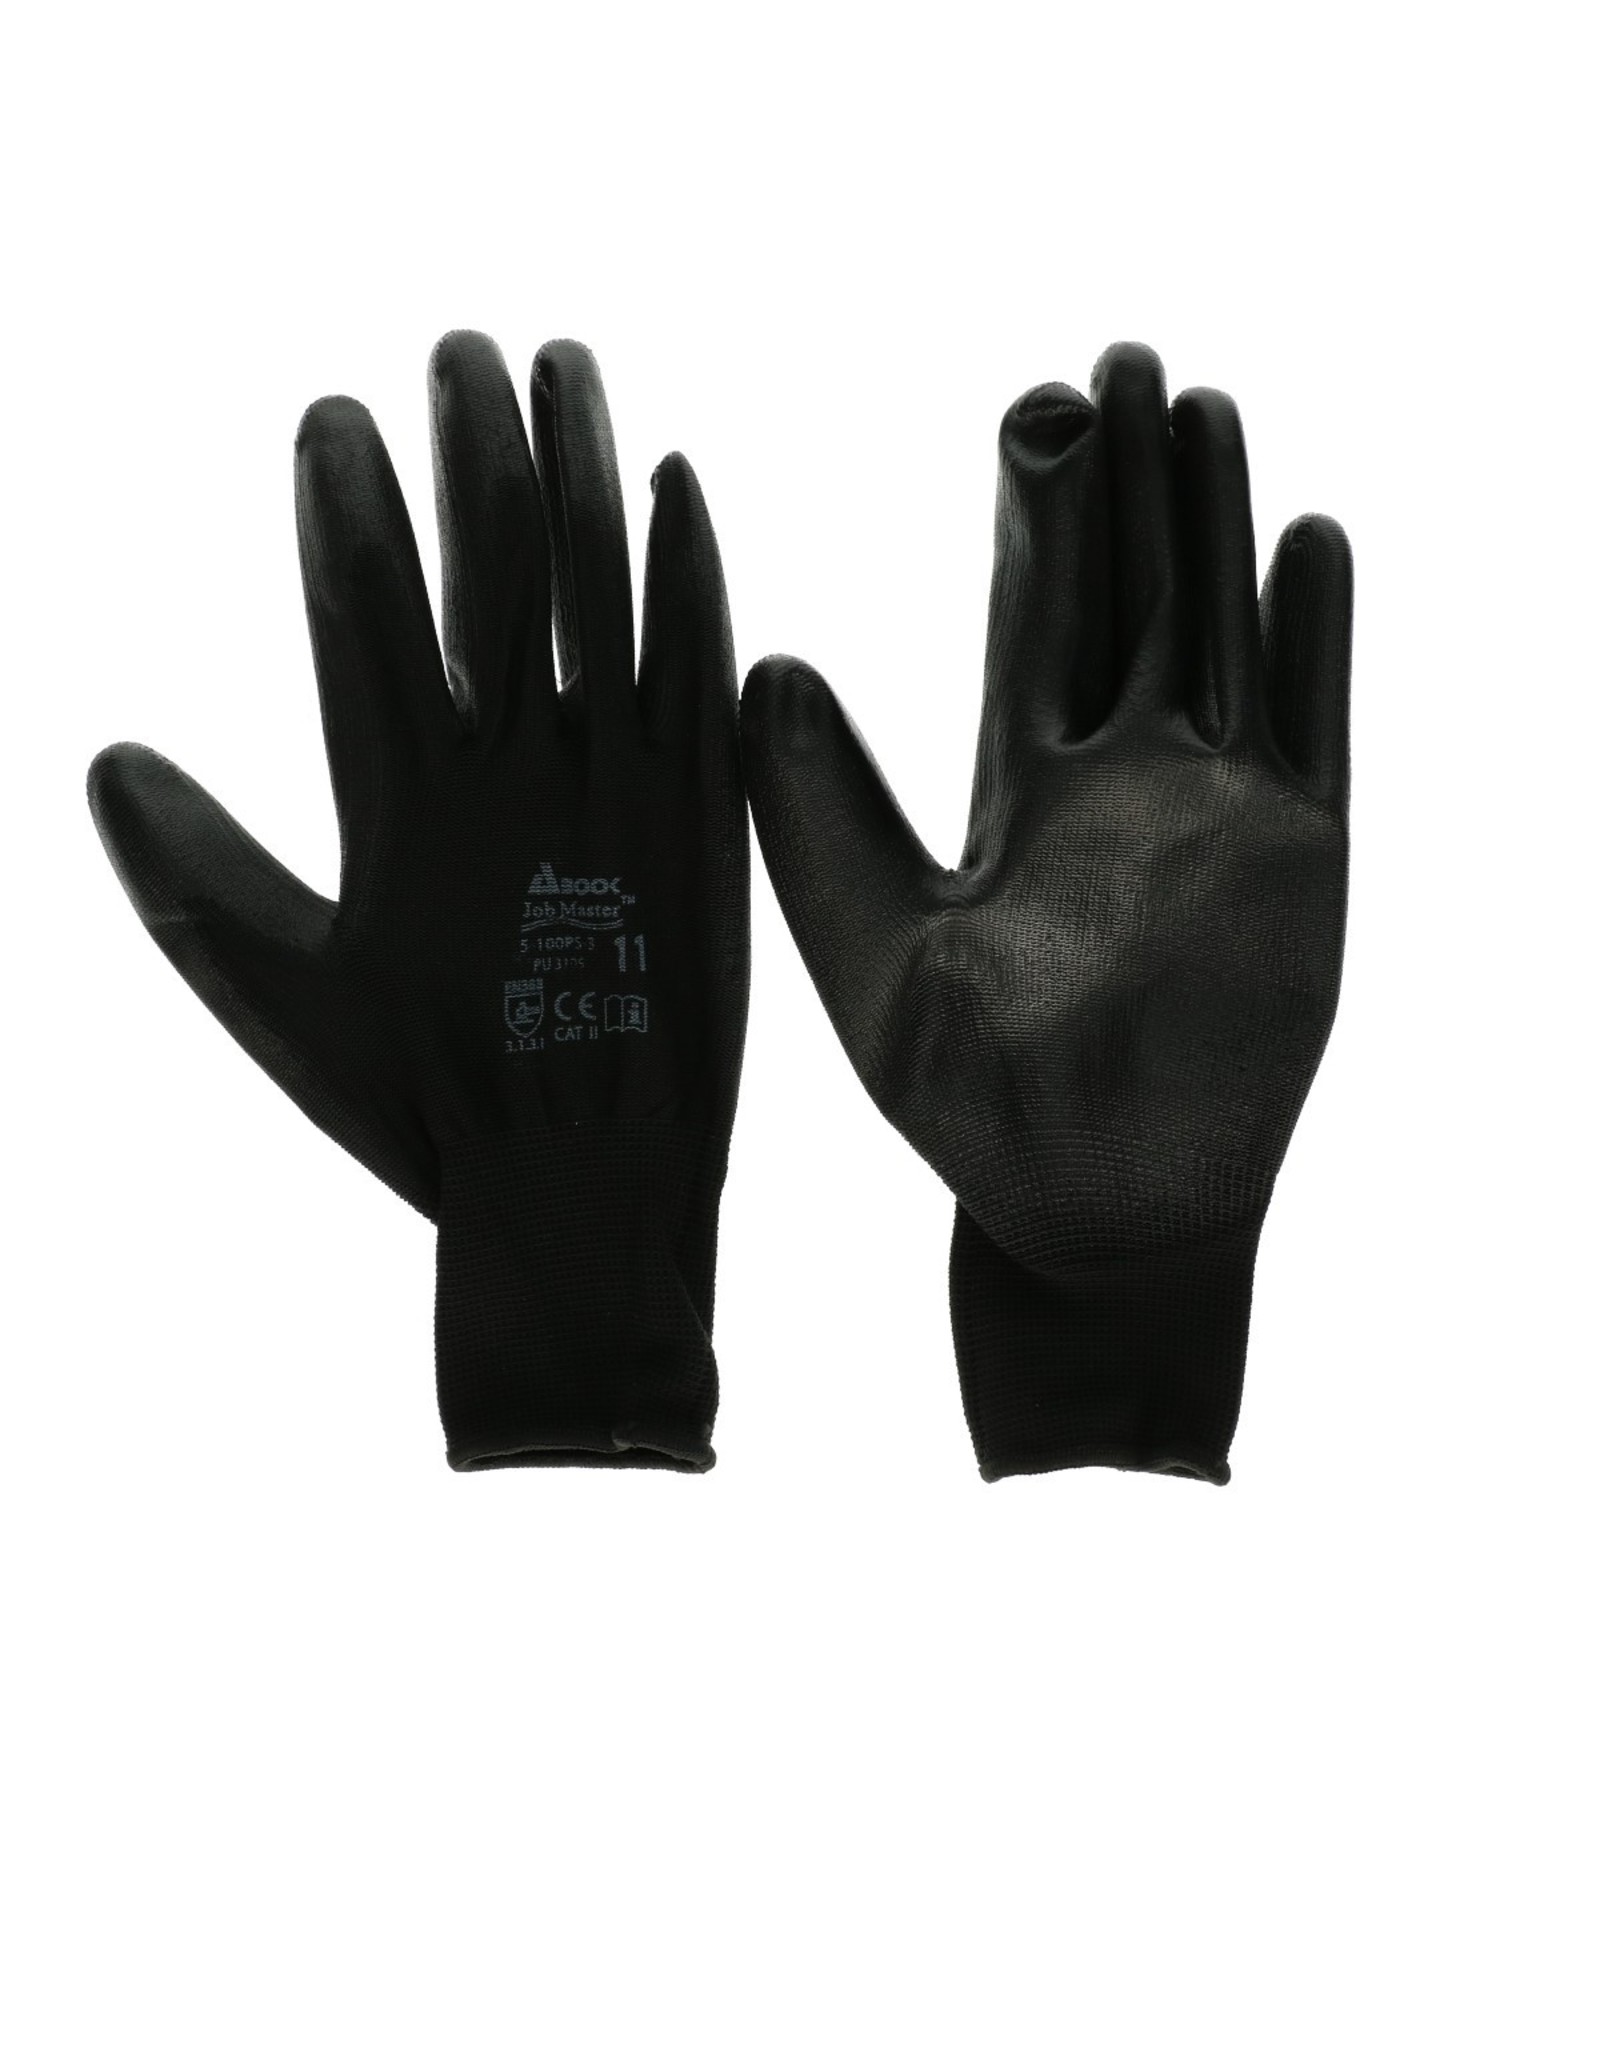 4AT Bescherming Handschoen PU (10) XL x12 | Kleur: Zwart | Eenheid: pak | Aantal: 1 | Aantal per eenheid: 12x